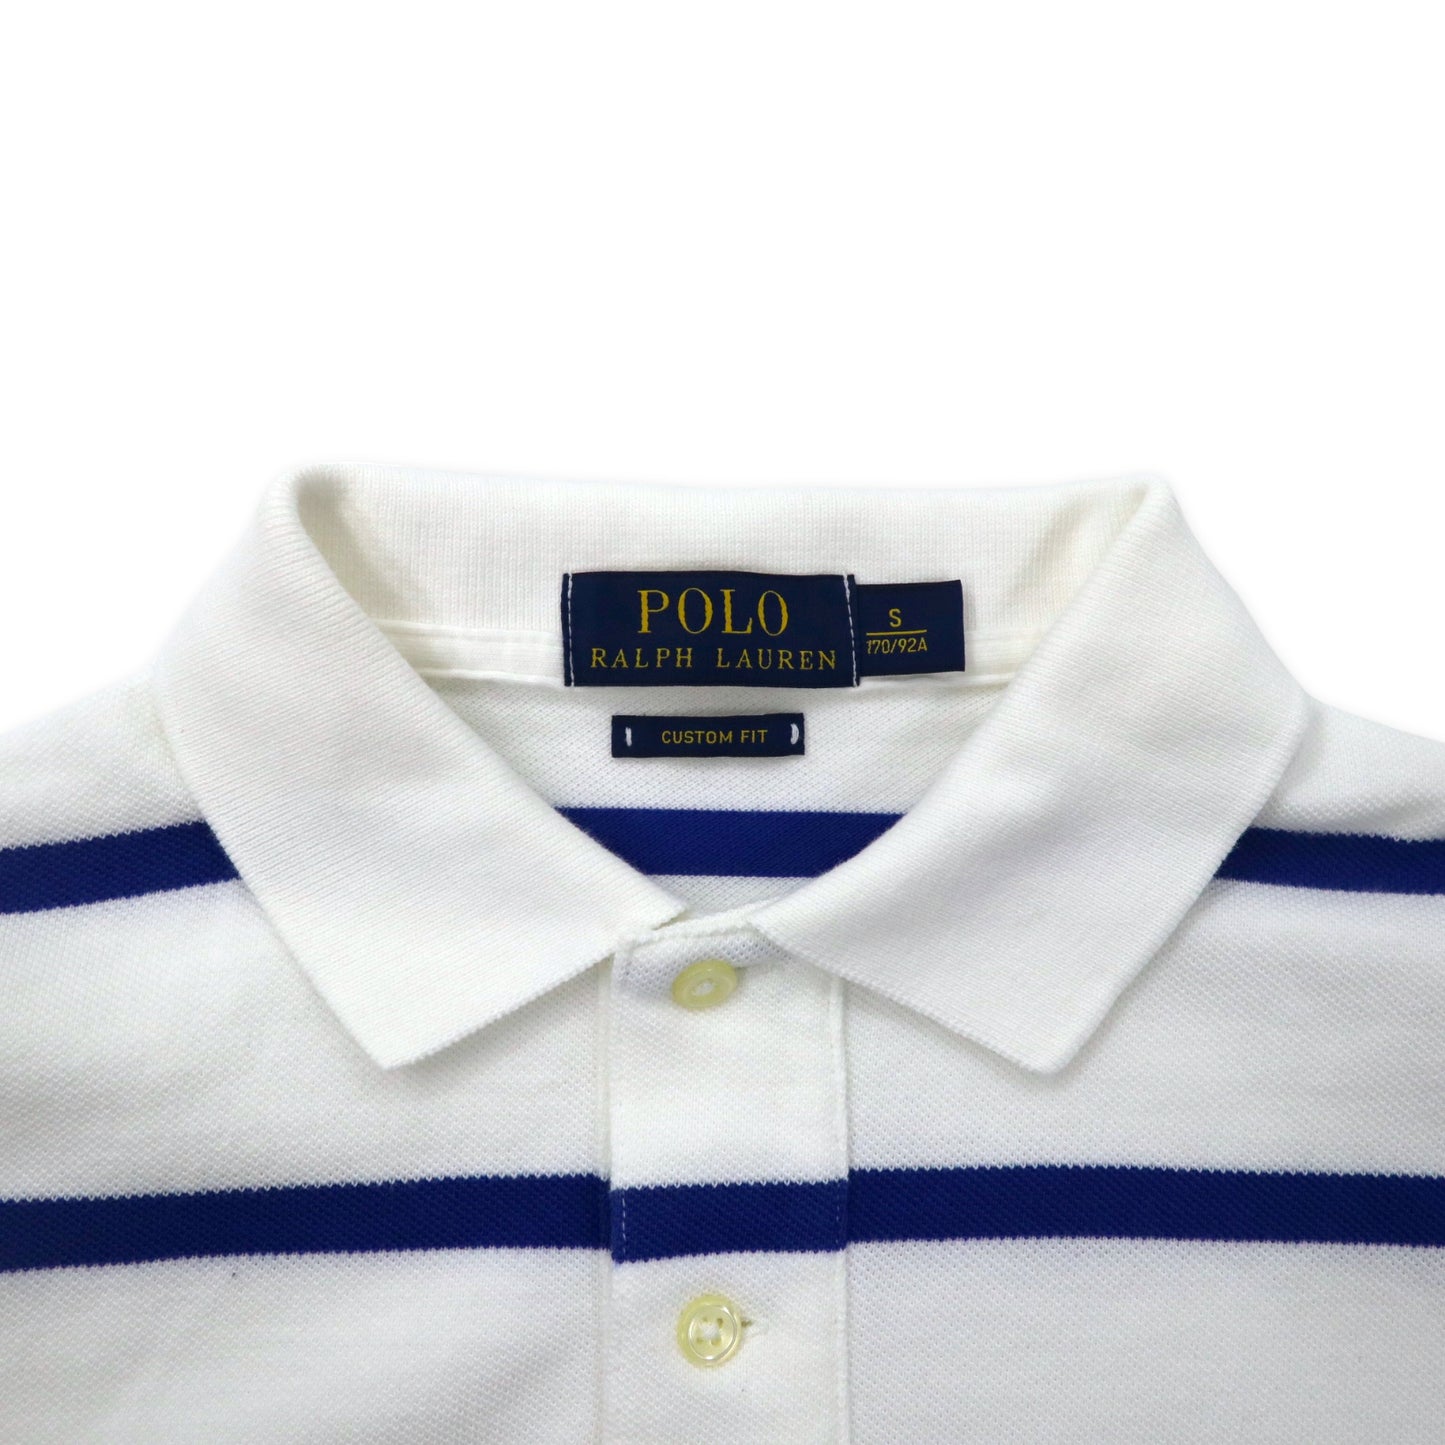 POLO RALPH LAUREN ボーダー ポロシャツ 170 ホワイト ブルー コットン スモールポニー刺繍 CUSTOM FIT